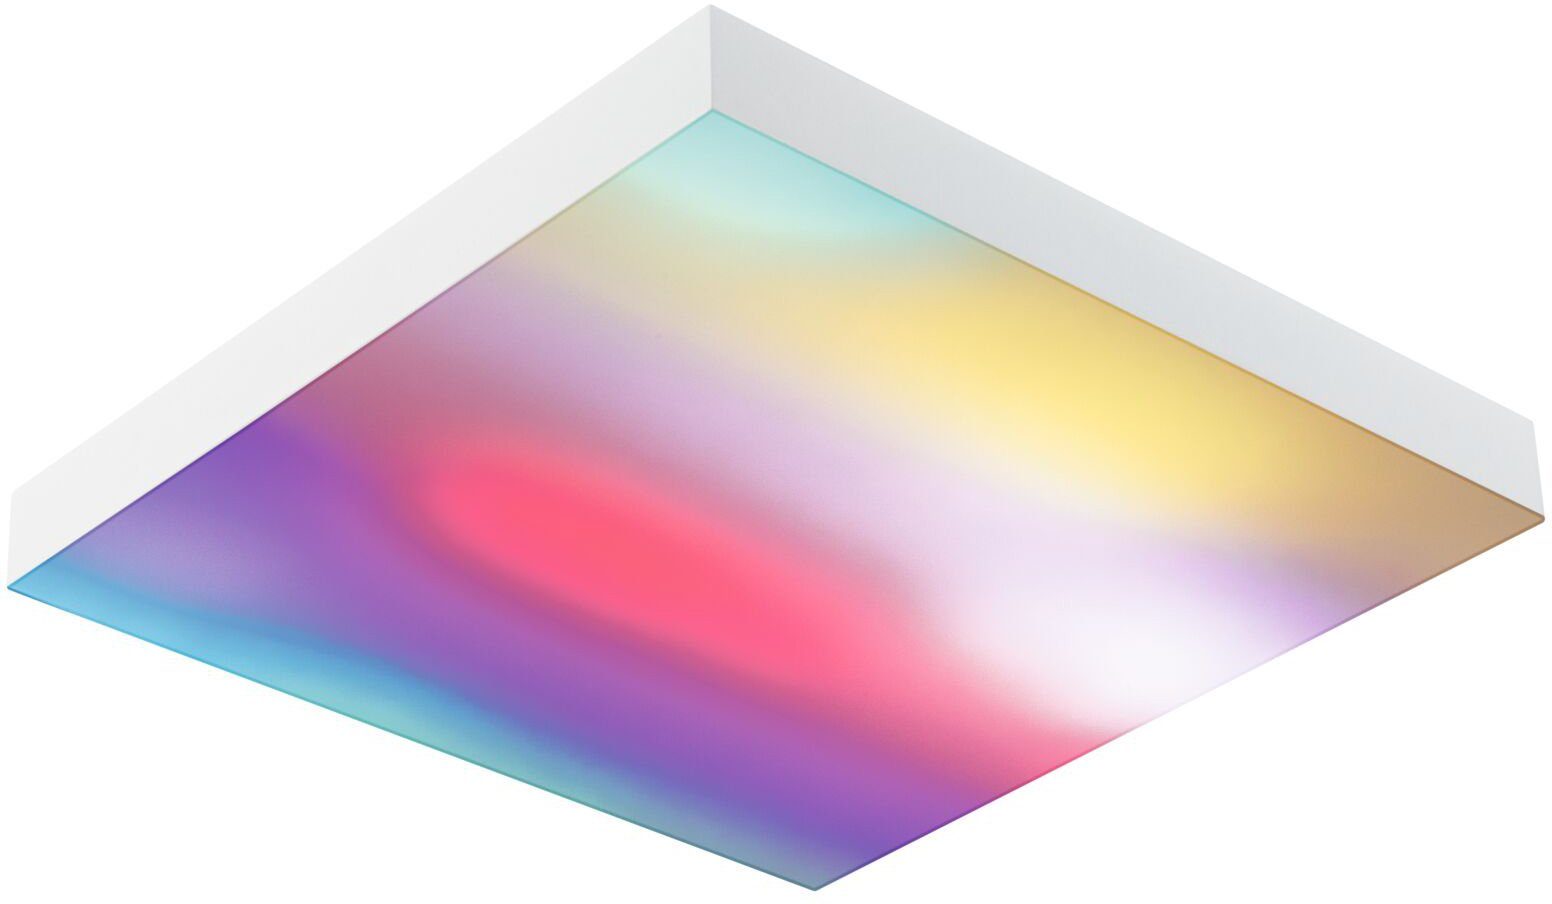 fest Tageslichtweiß Panel Rainbow, Velora integriert, LED LED Paulmann